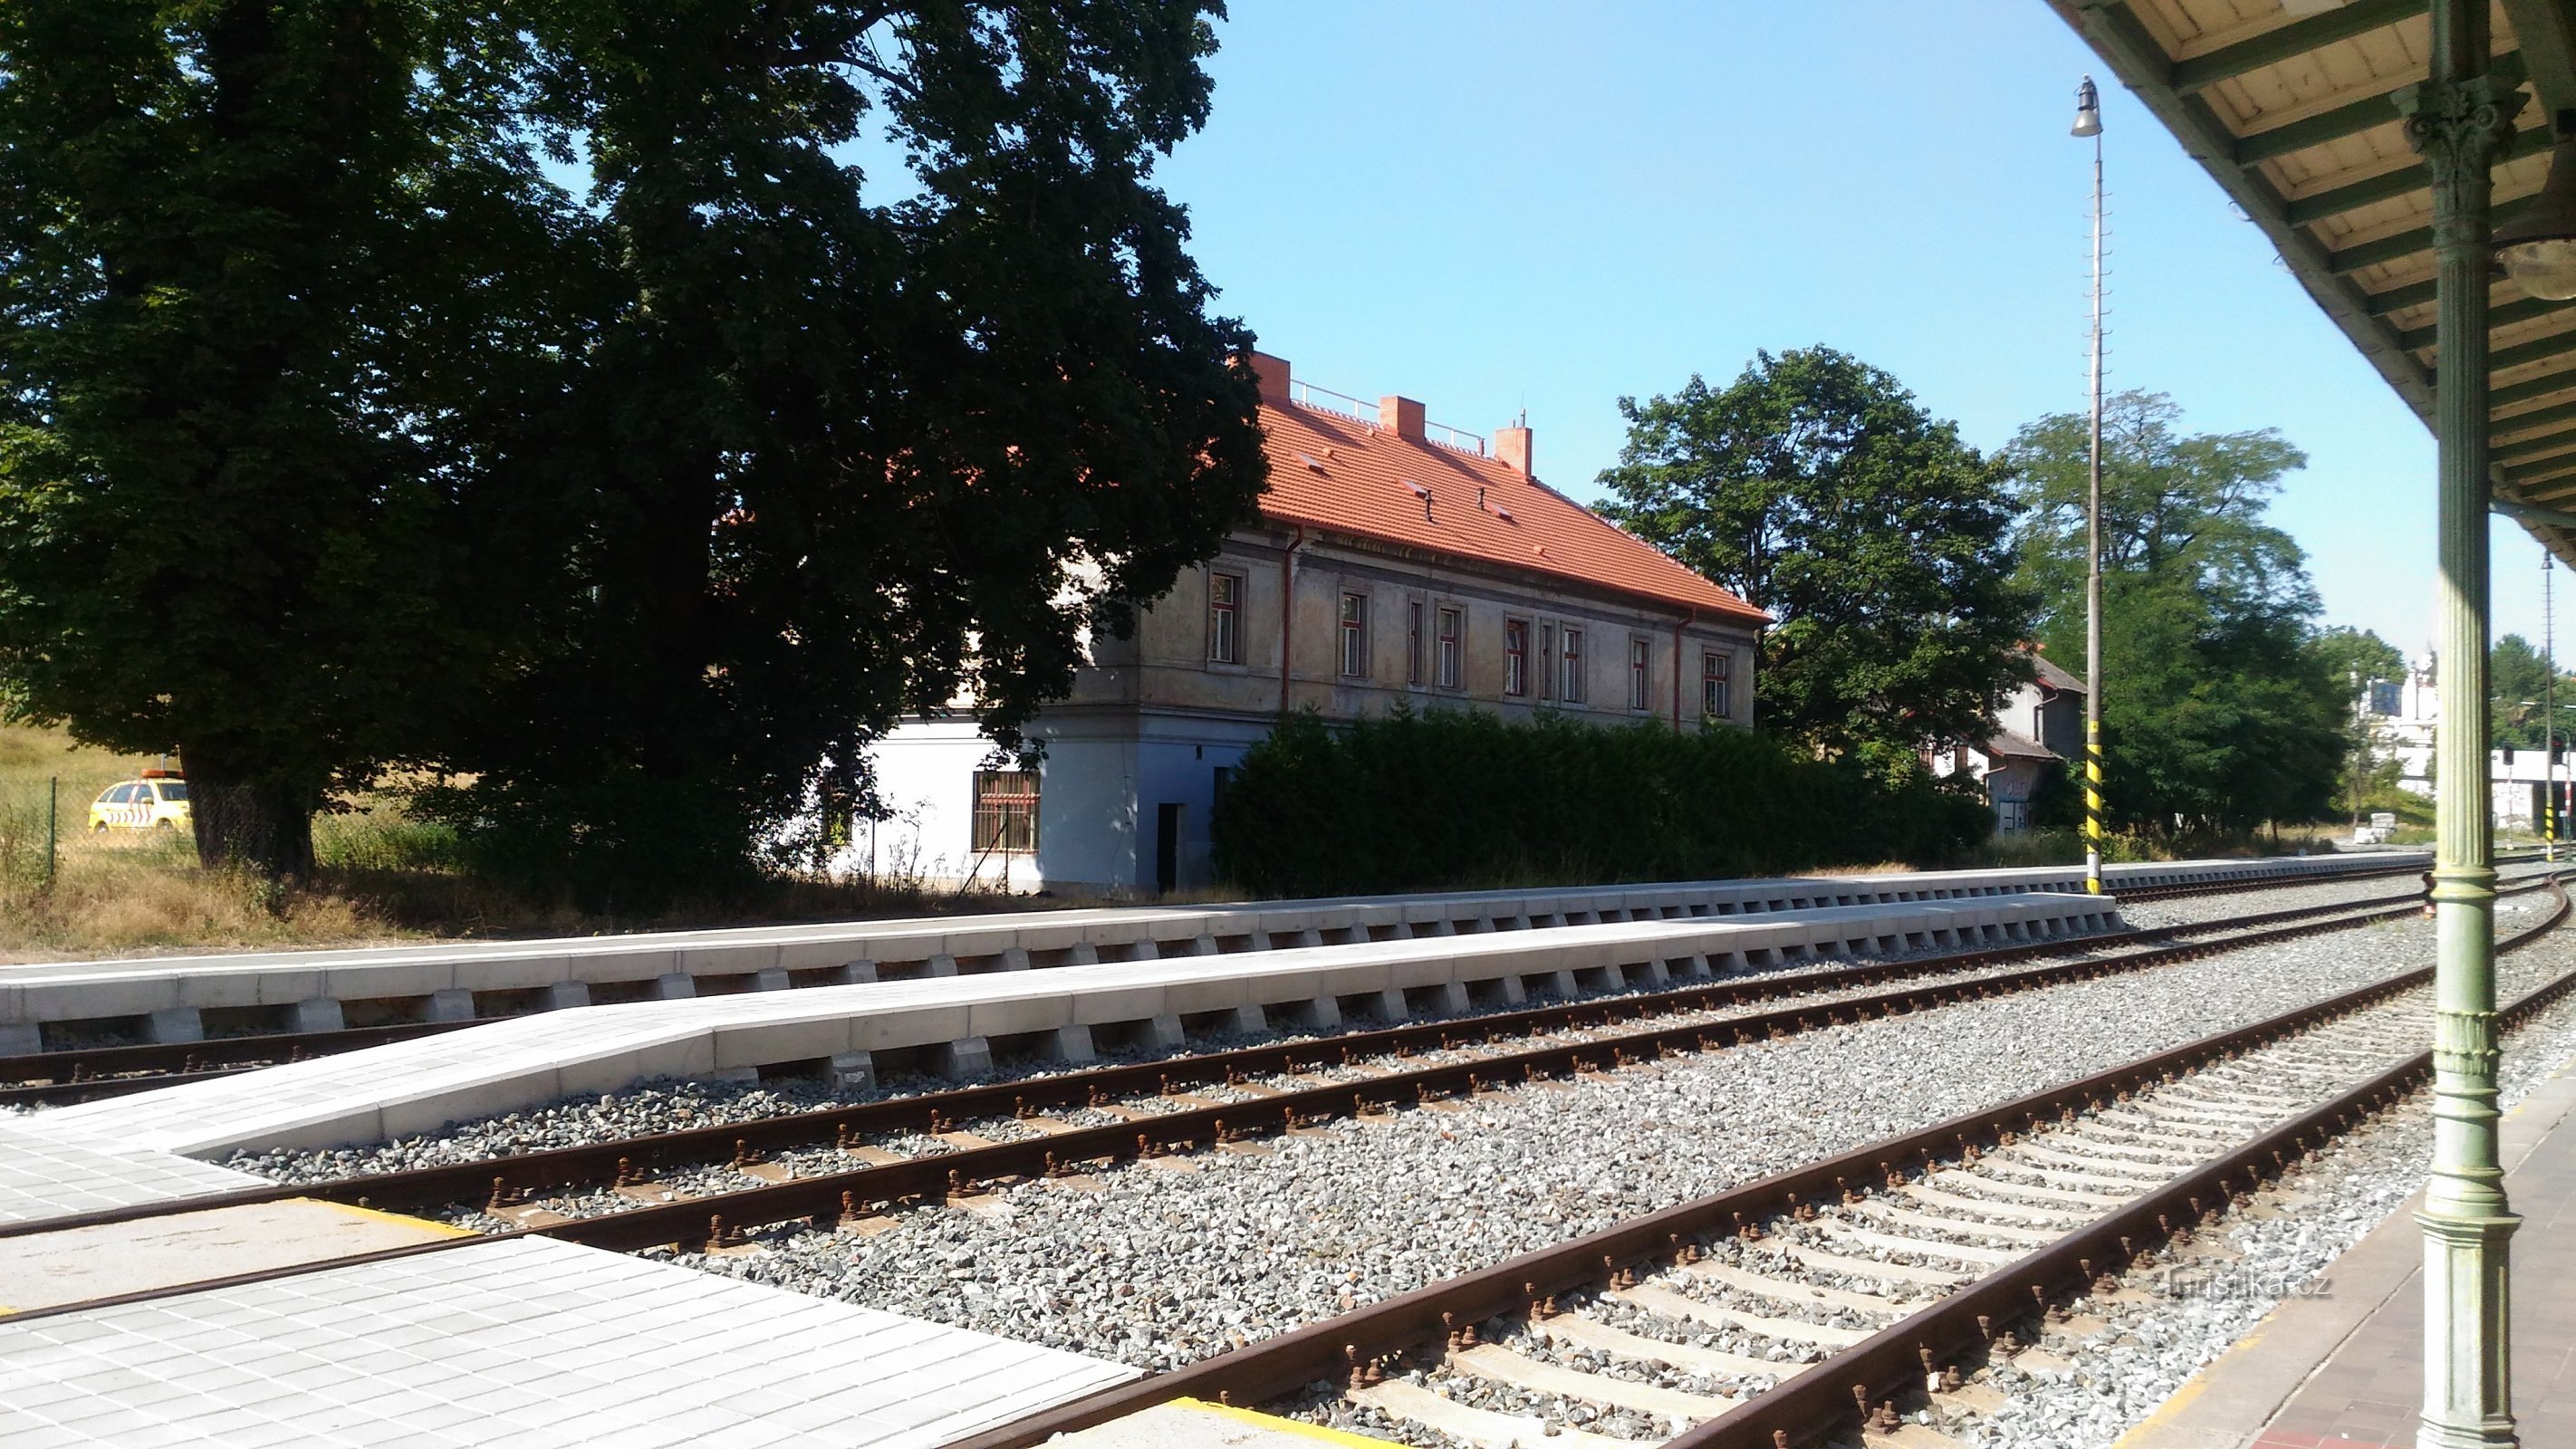 L'ex stazione ferroviaria della carrozza trainata da cavalli Praga - Bruska.